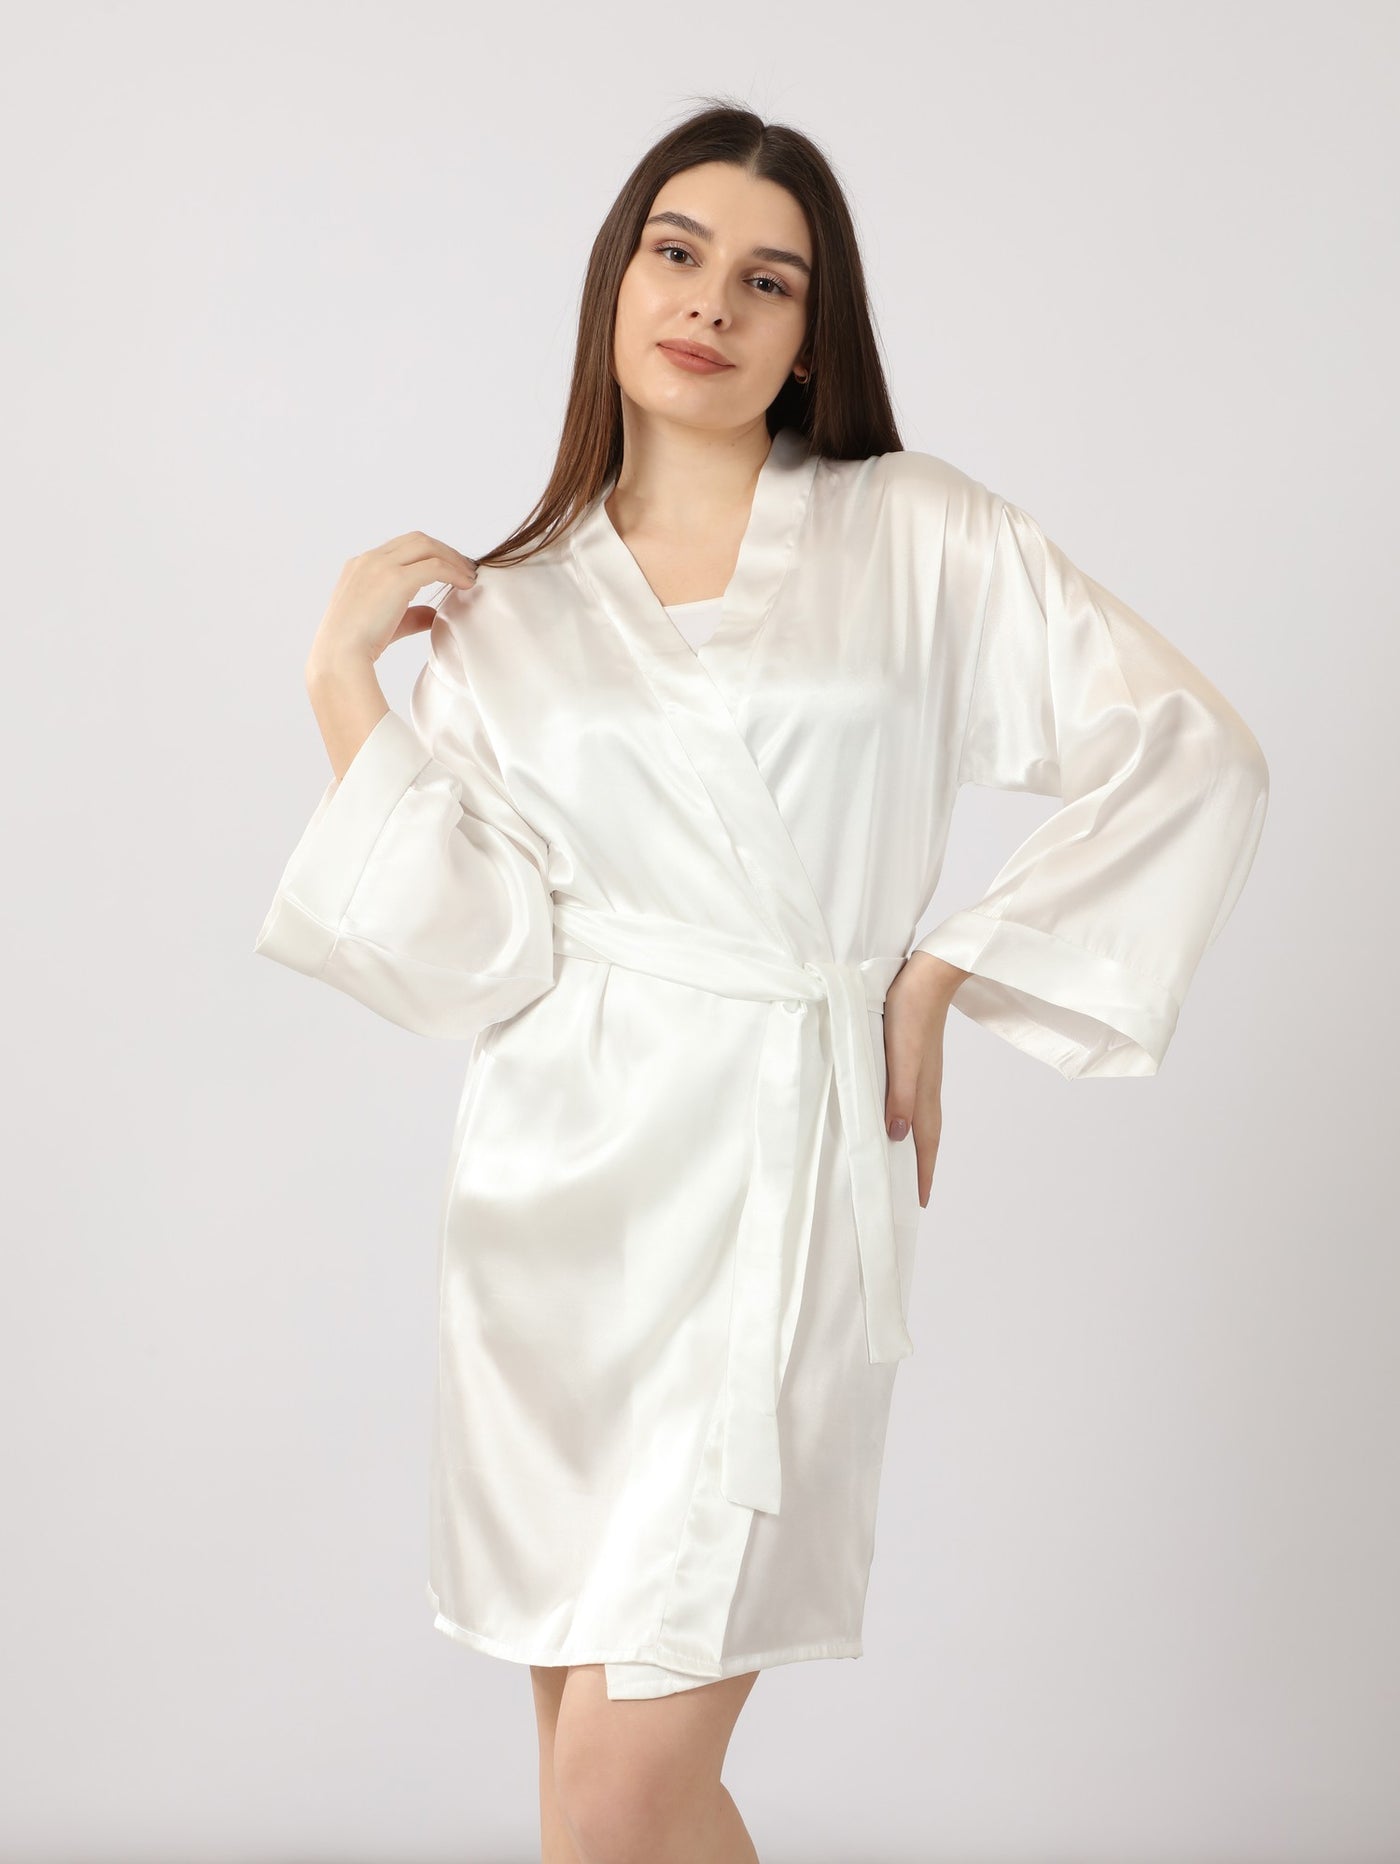 Robe - Embroidered - Embellished - Bridal